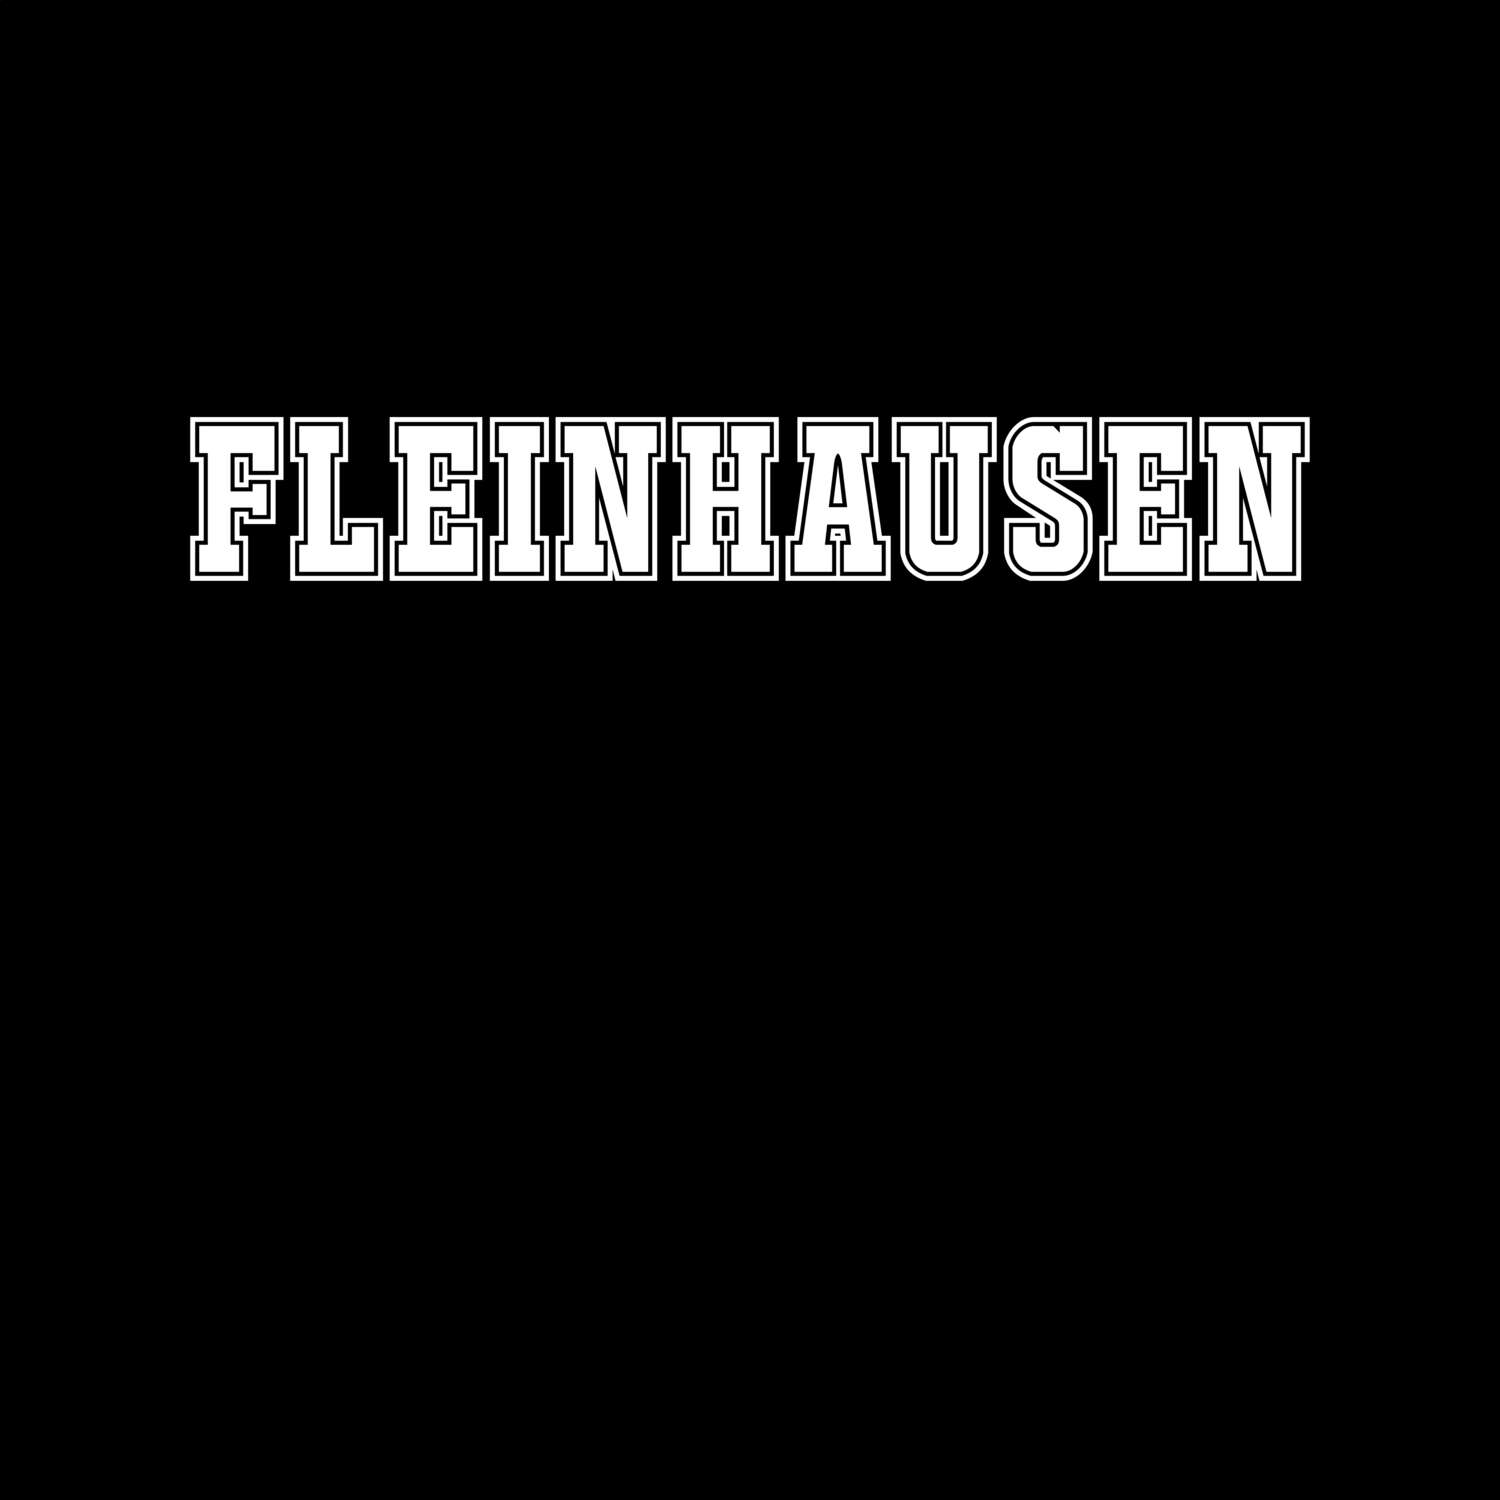 Fleinhausen T-Shirt »Classic«